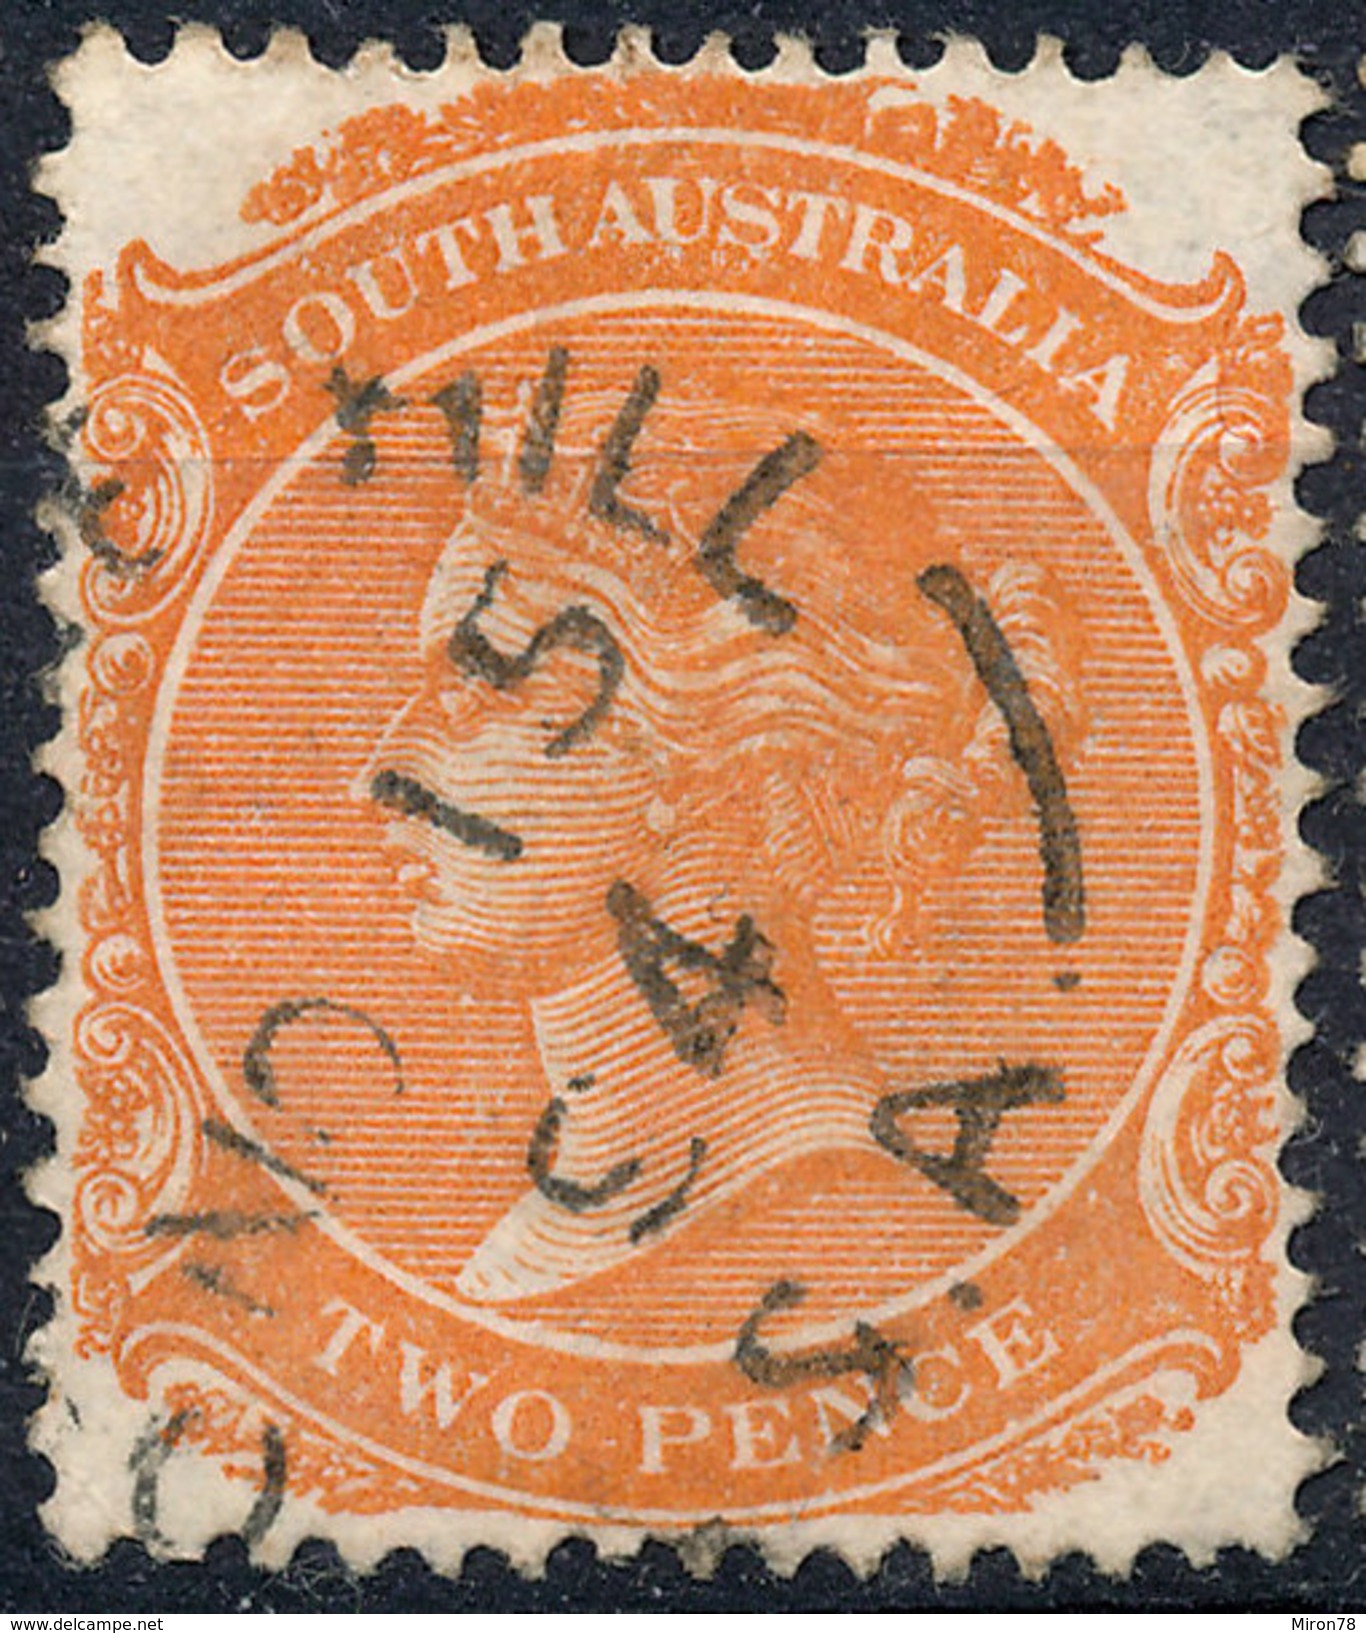 Stamp SOUTH AUSTRALIA Queen Victoria 2p Used Lot#29 - Oblitérés